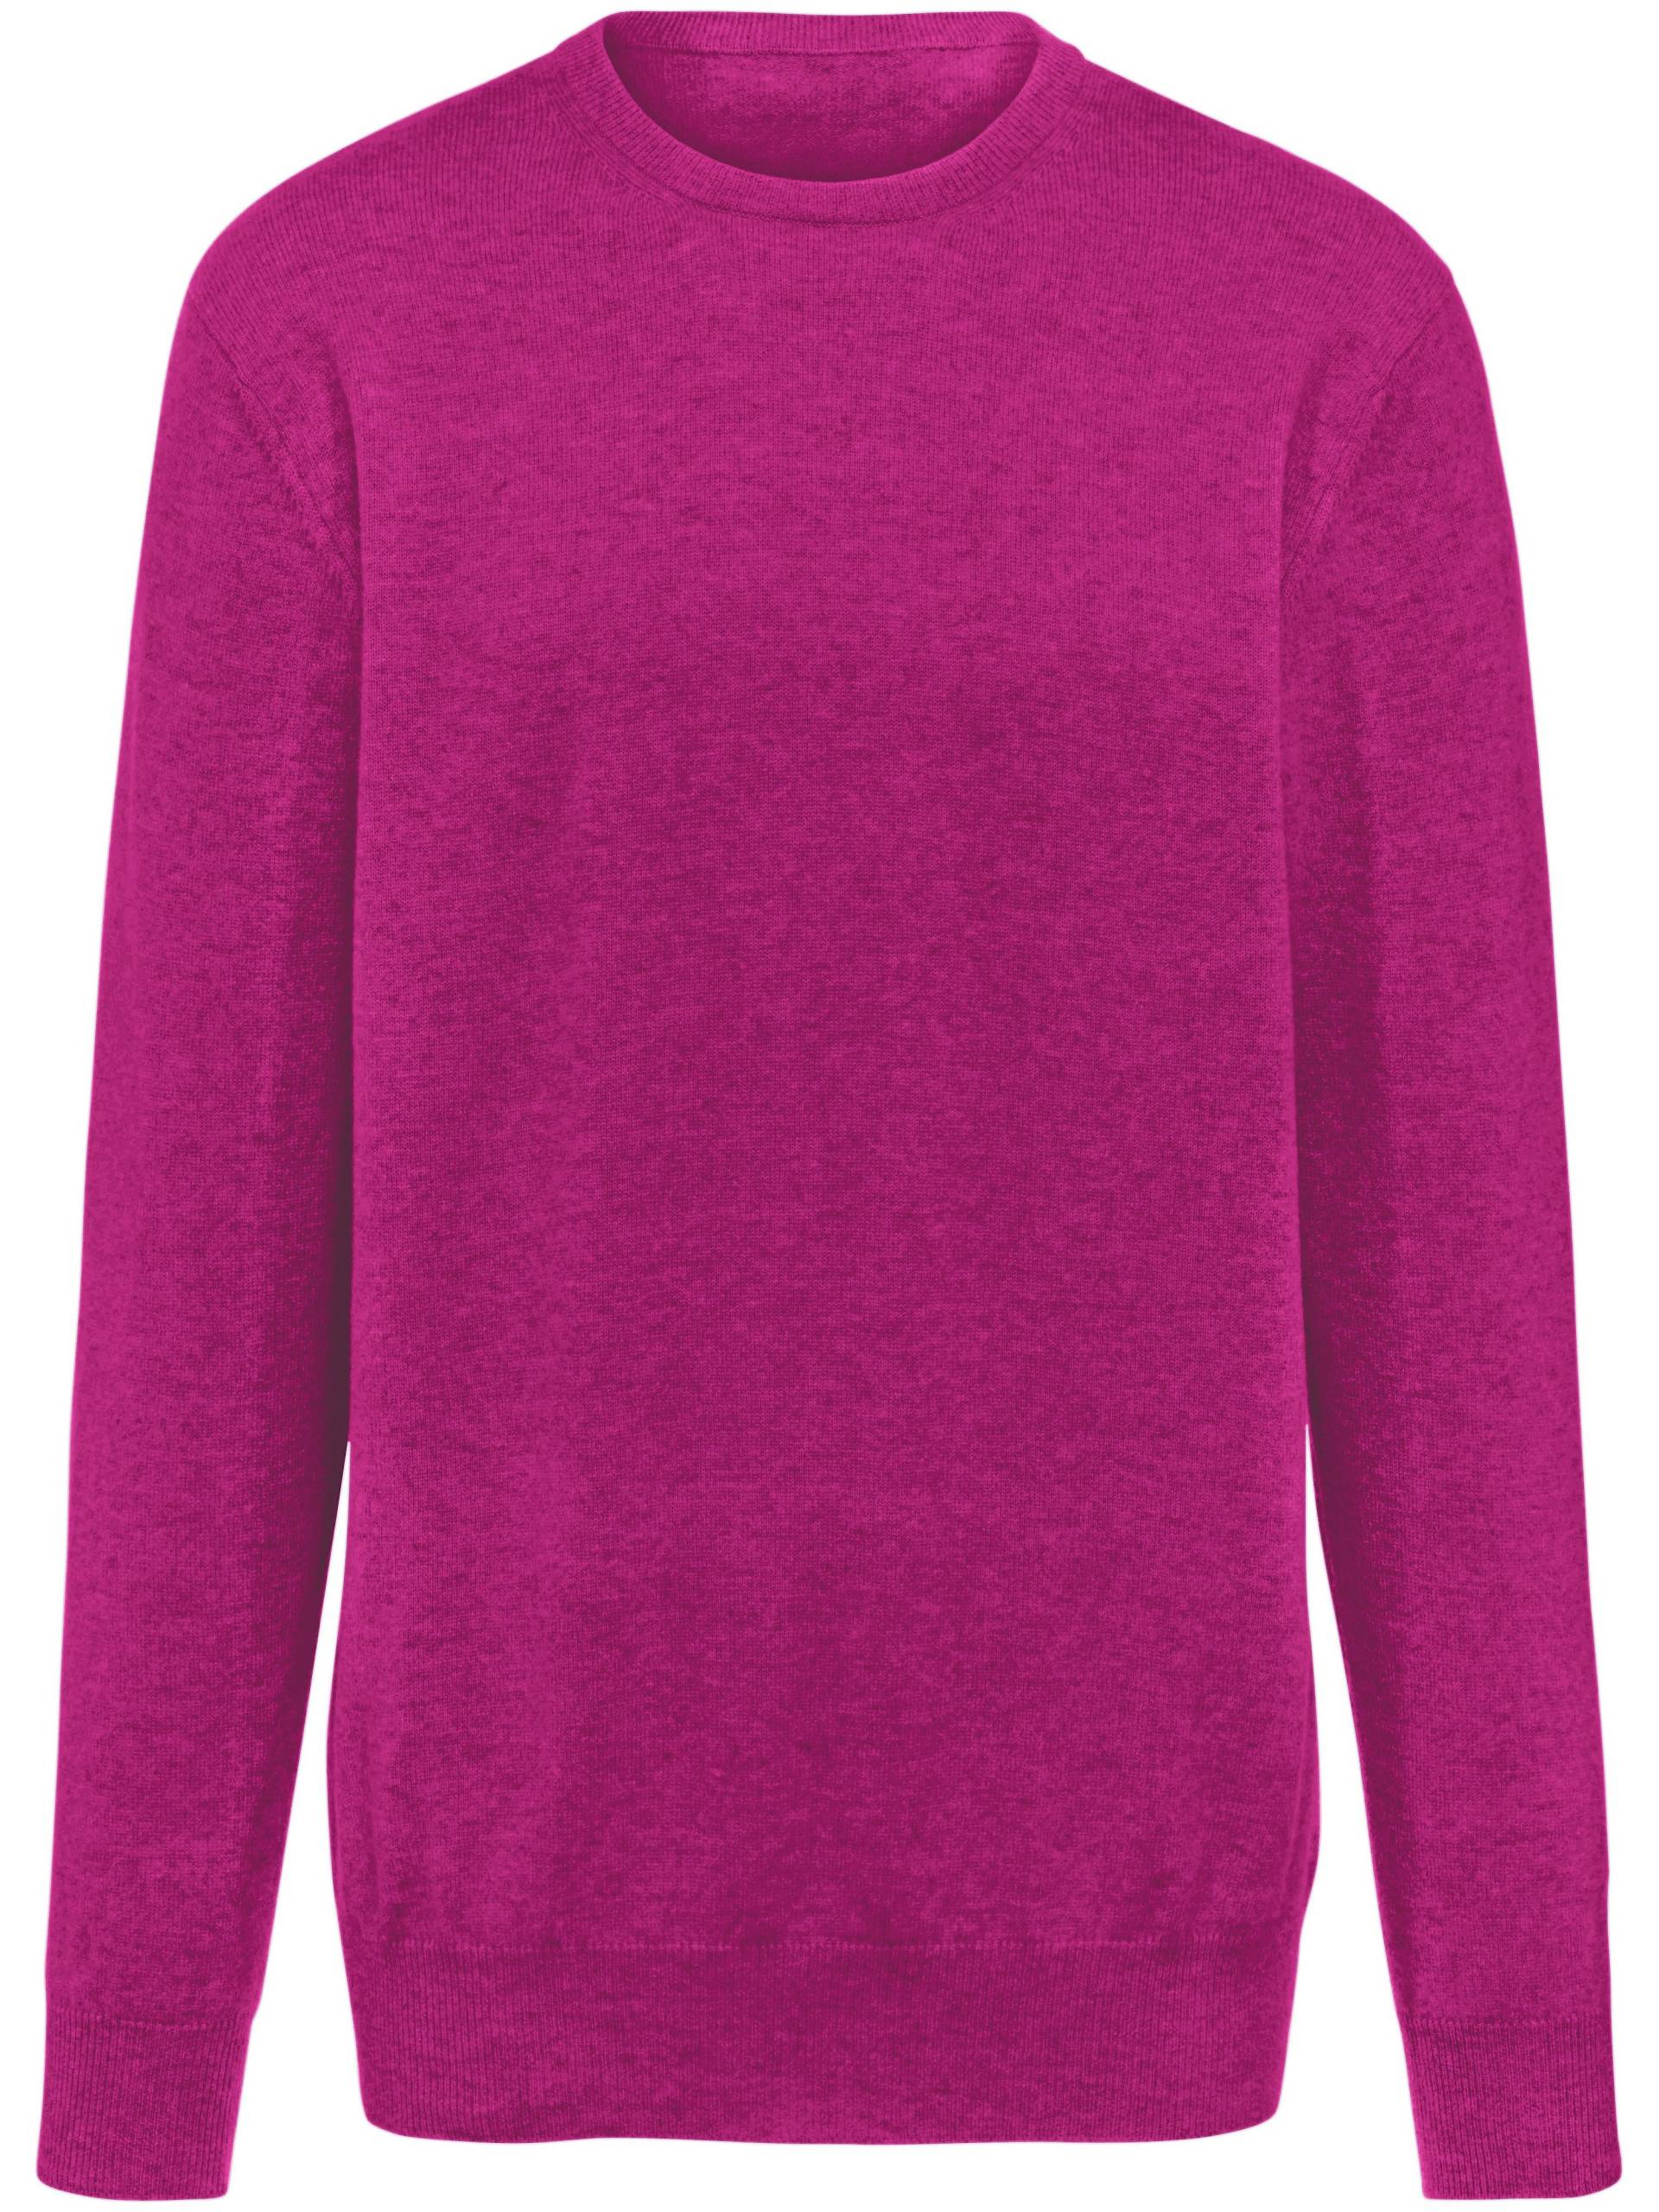 Pullover aus 100% Premium-Kaschmir Modell Ralph Peter Hahn Cashmere pink Größe: 48 von Peter Hahn Cashmere